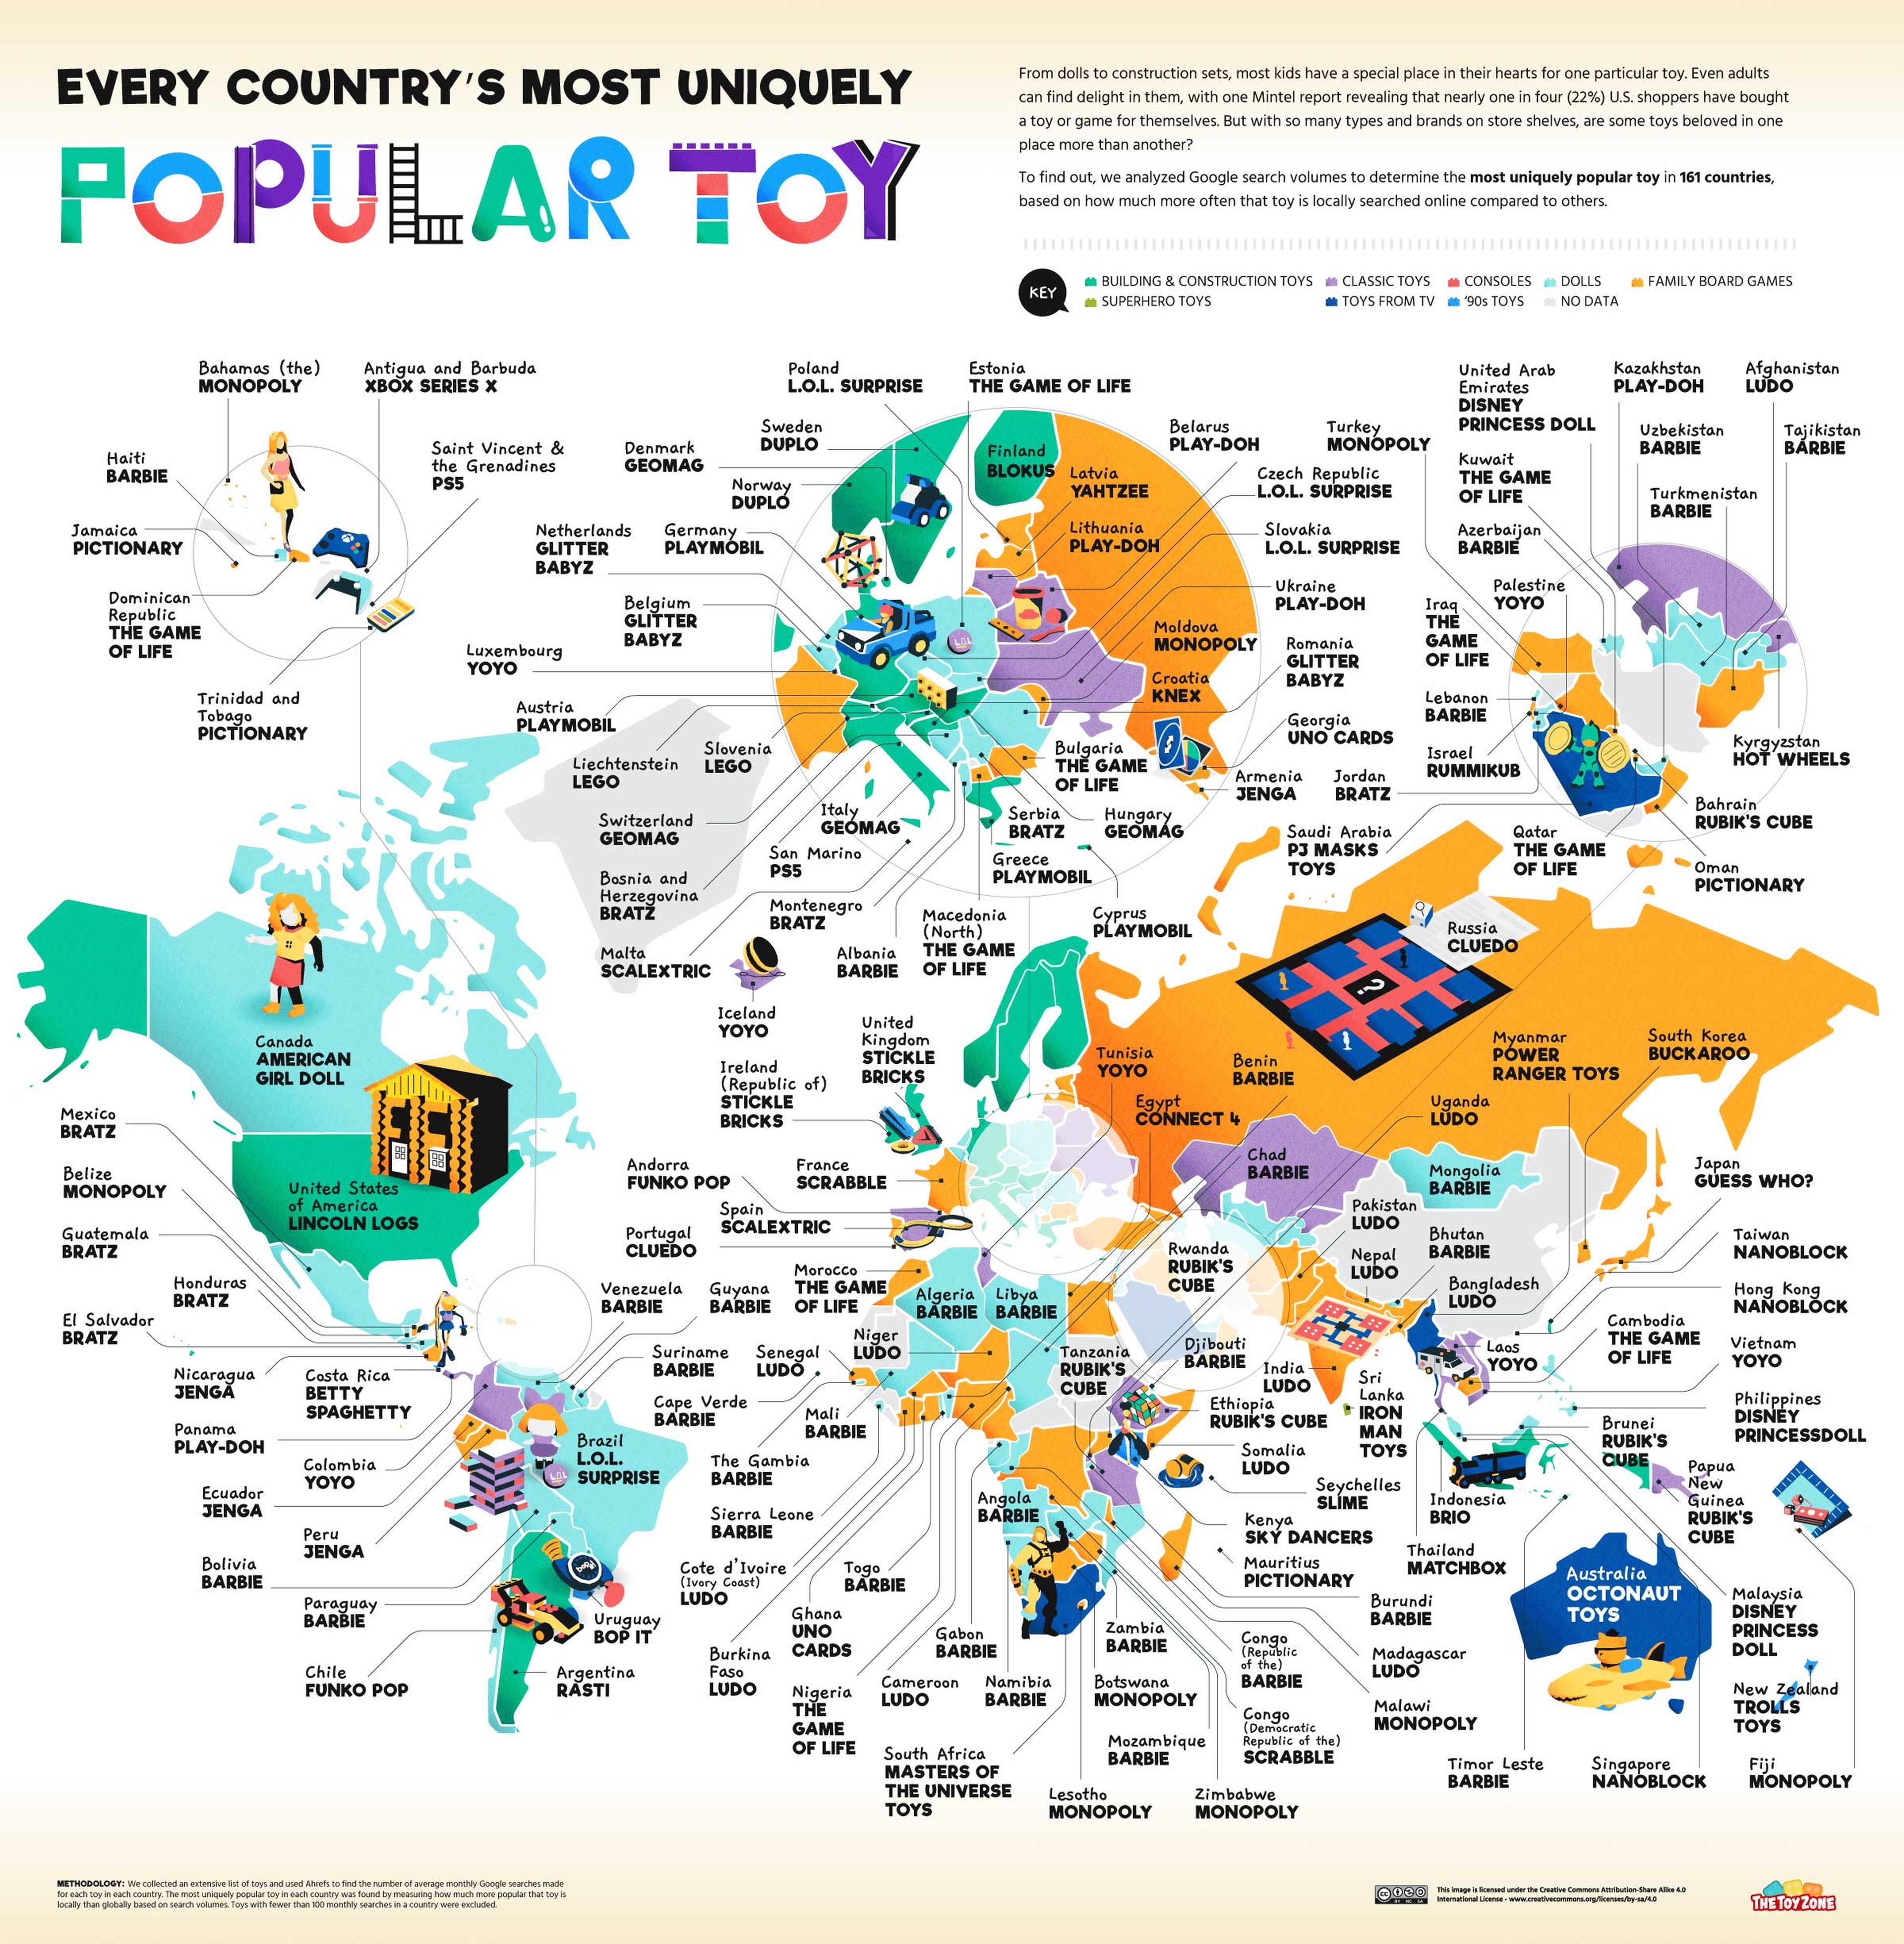 Este mapa muestra el juguete favorito de todos los países del mundo